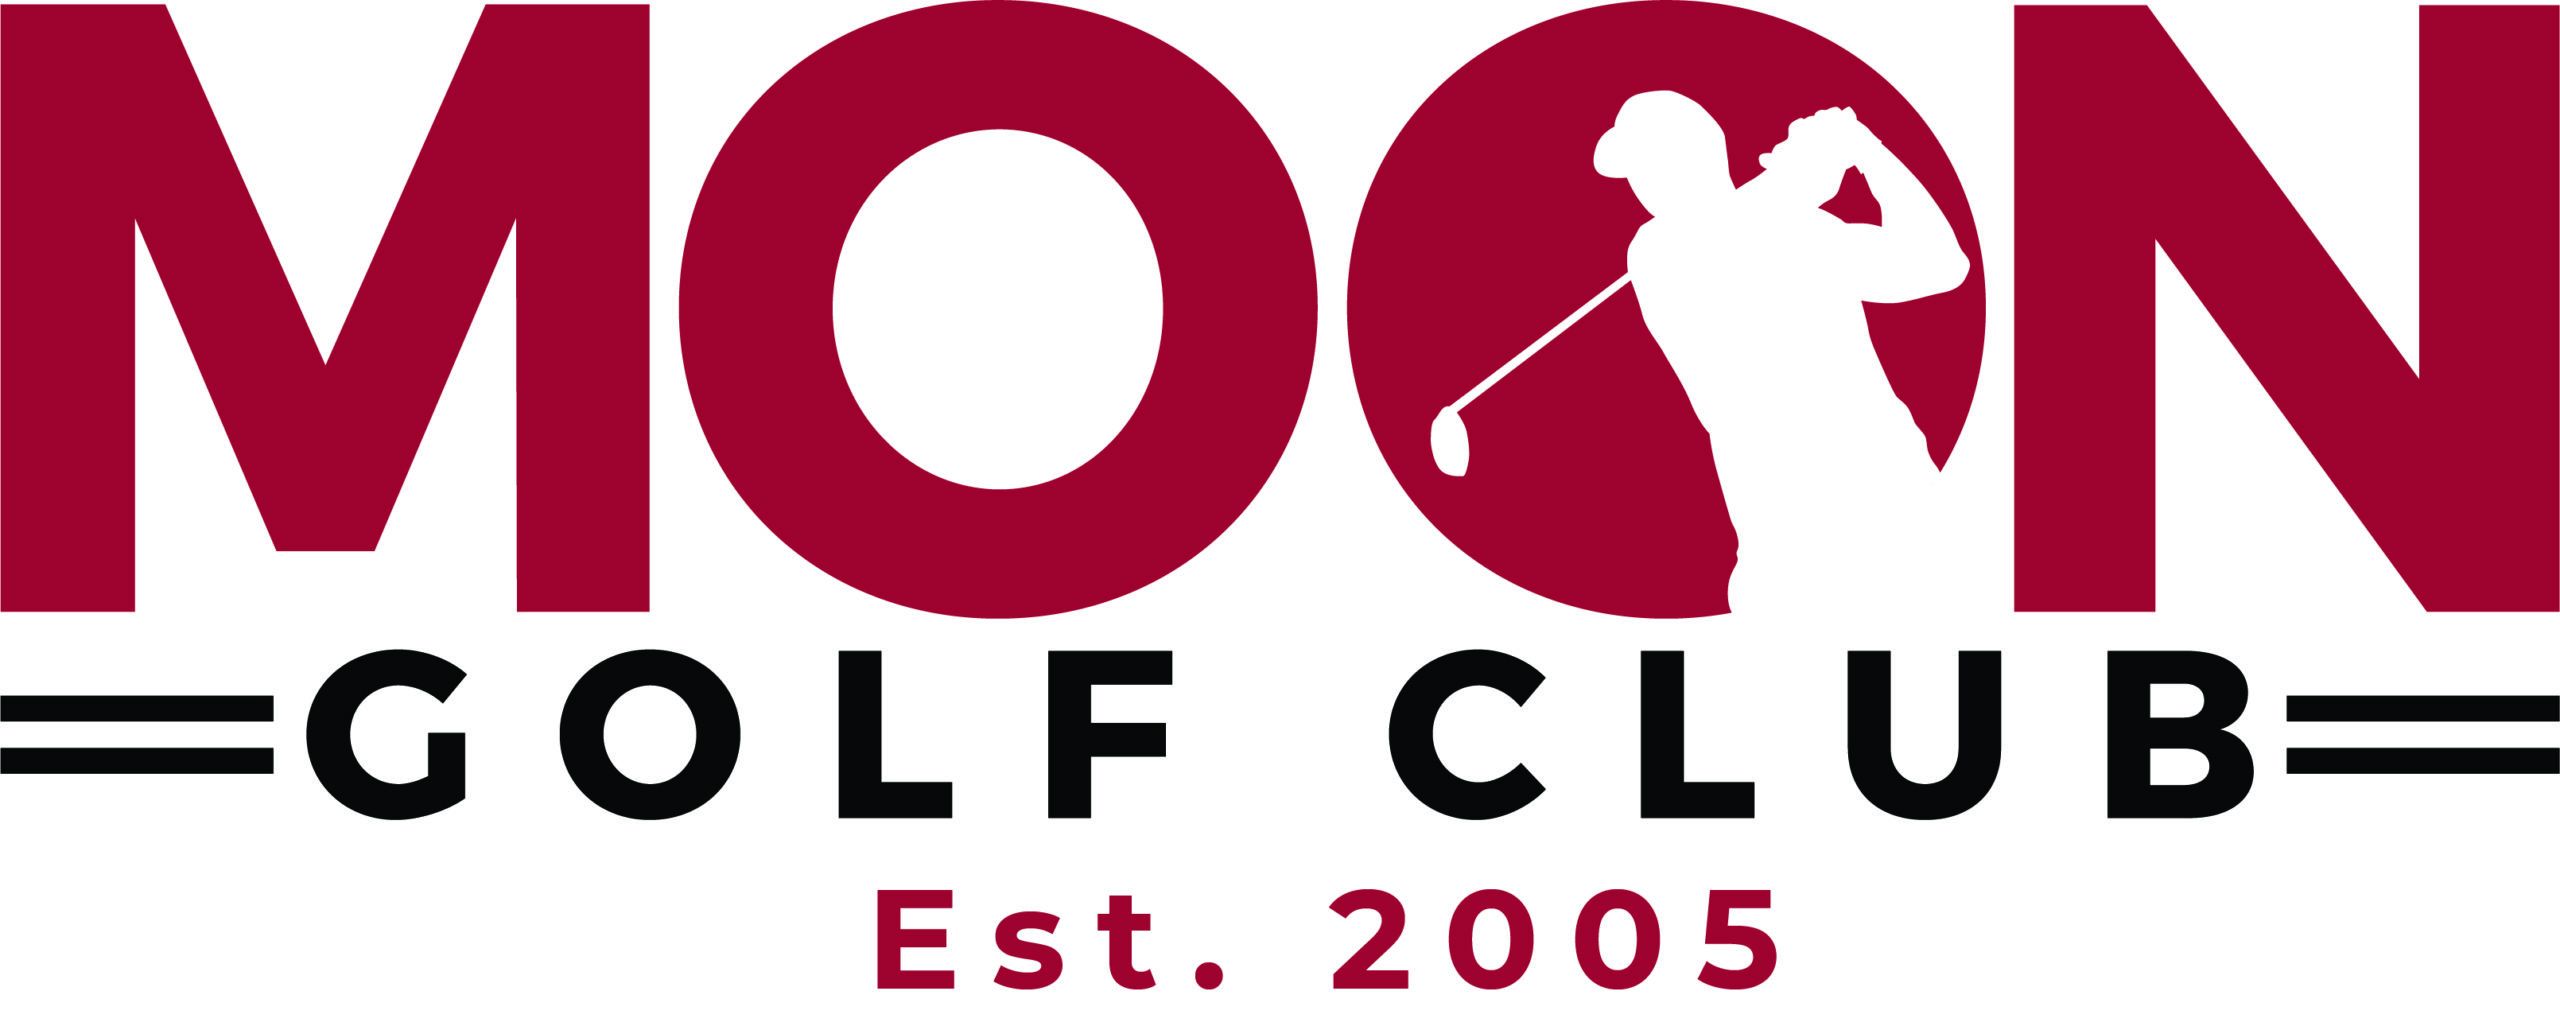 Moon Golf Club